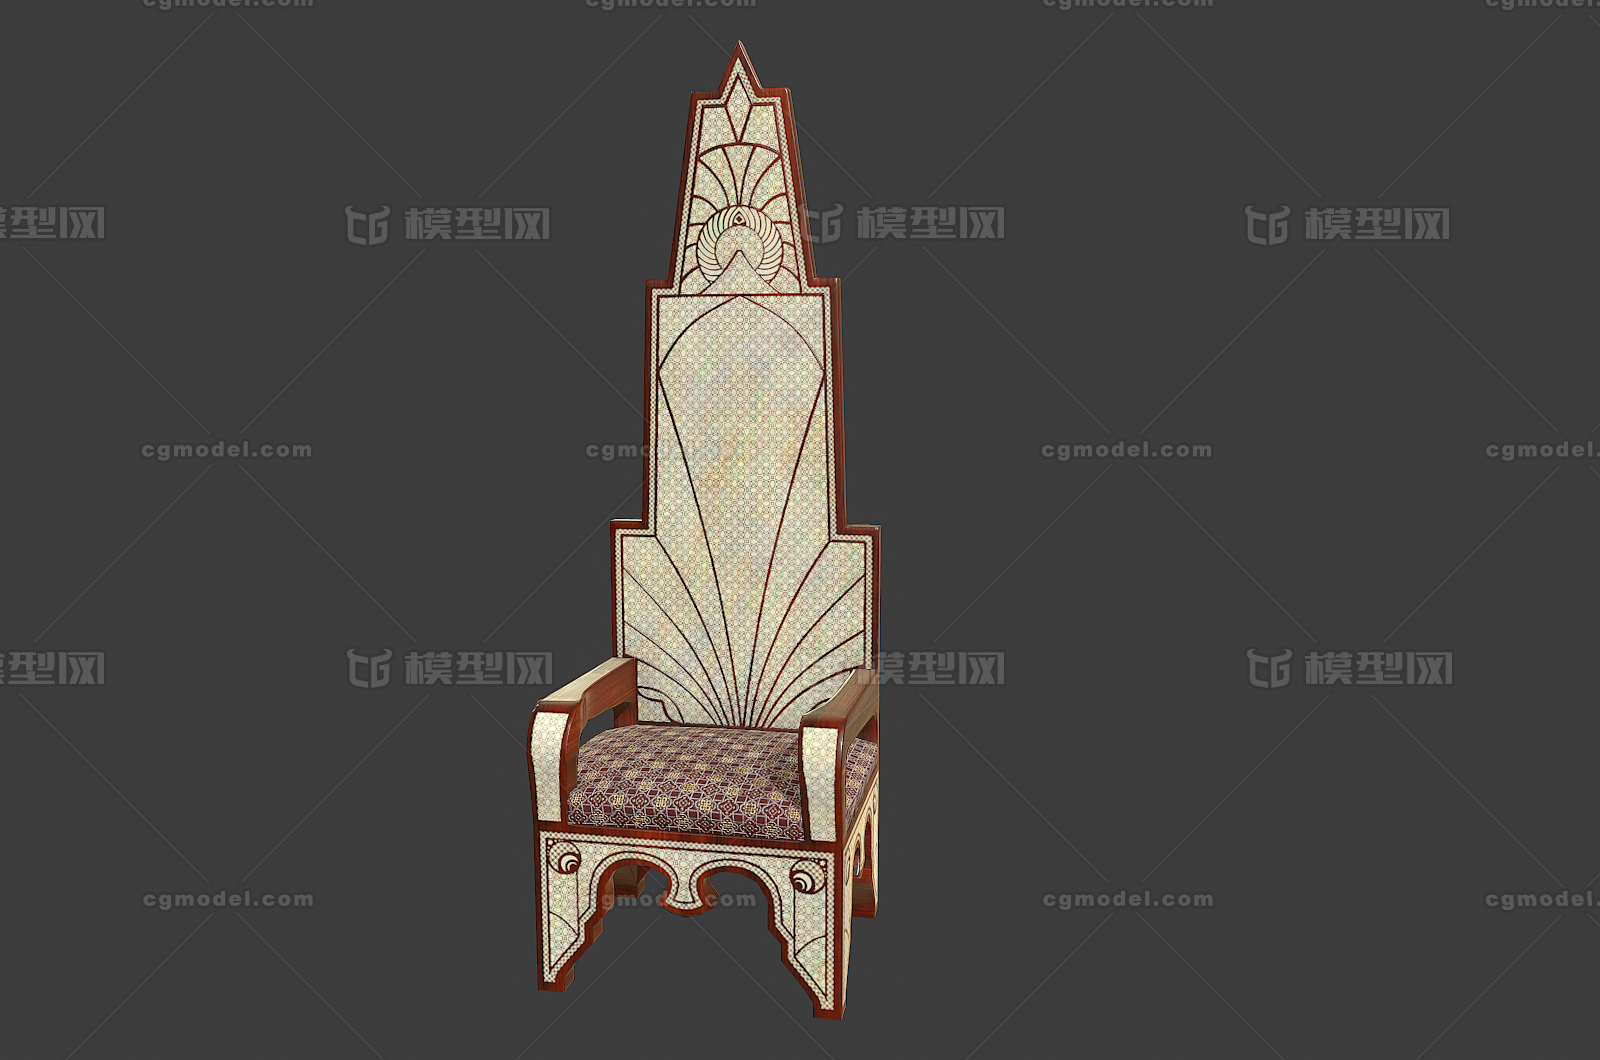 国王 宝座 王座 皇帝 皇座 帝王 王位 座椅 皇宫 皇家 中世纪次时代